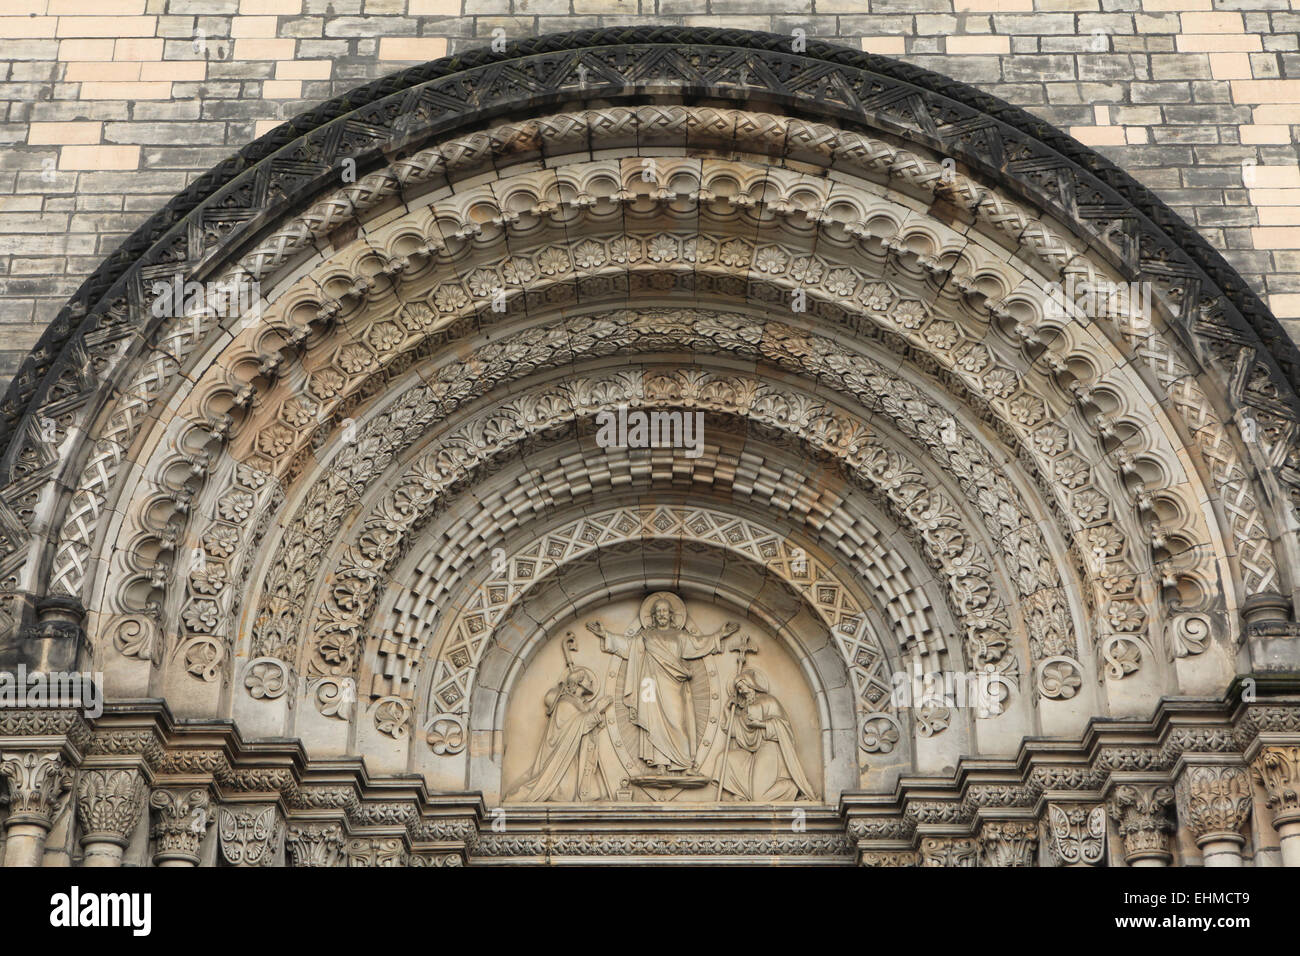 Jesus Christus segnet, St. Cyril und Methodius. Romanische Portal der St. Cyril und Methodius Kirche in Prag, Tschechien. Stockfoto